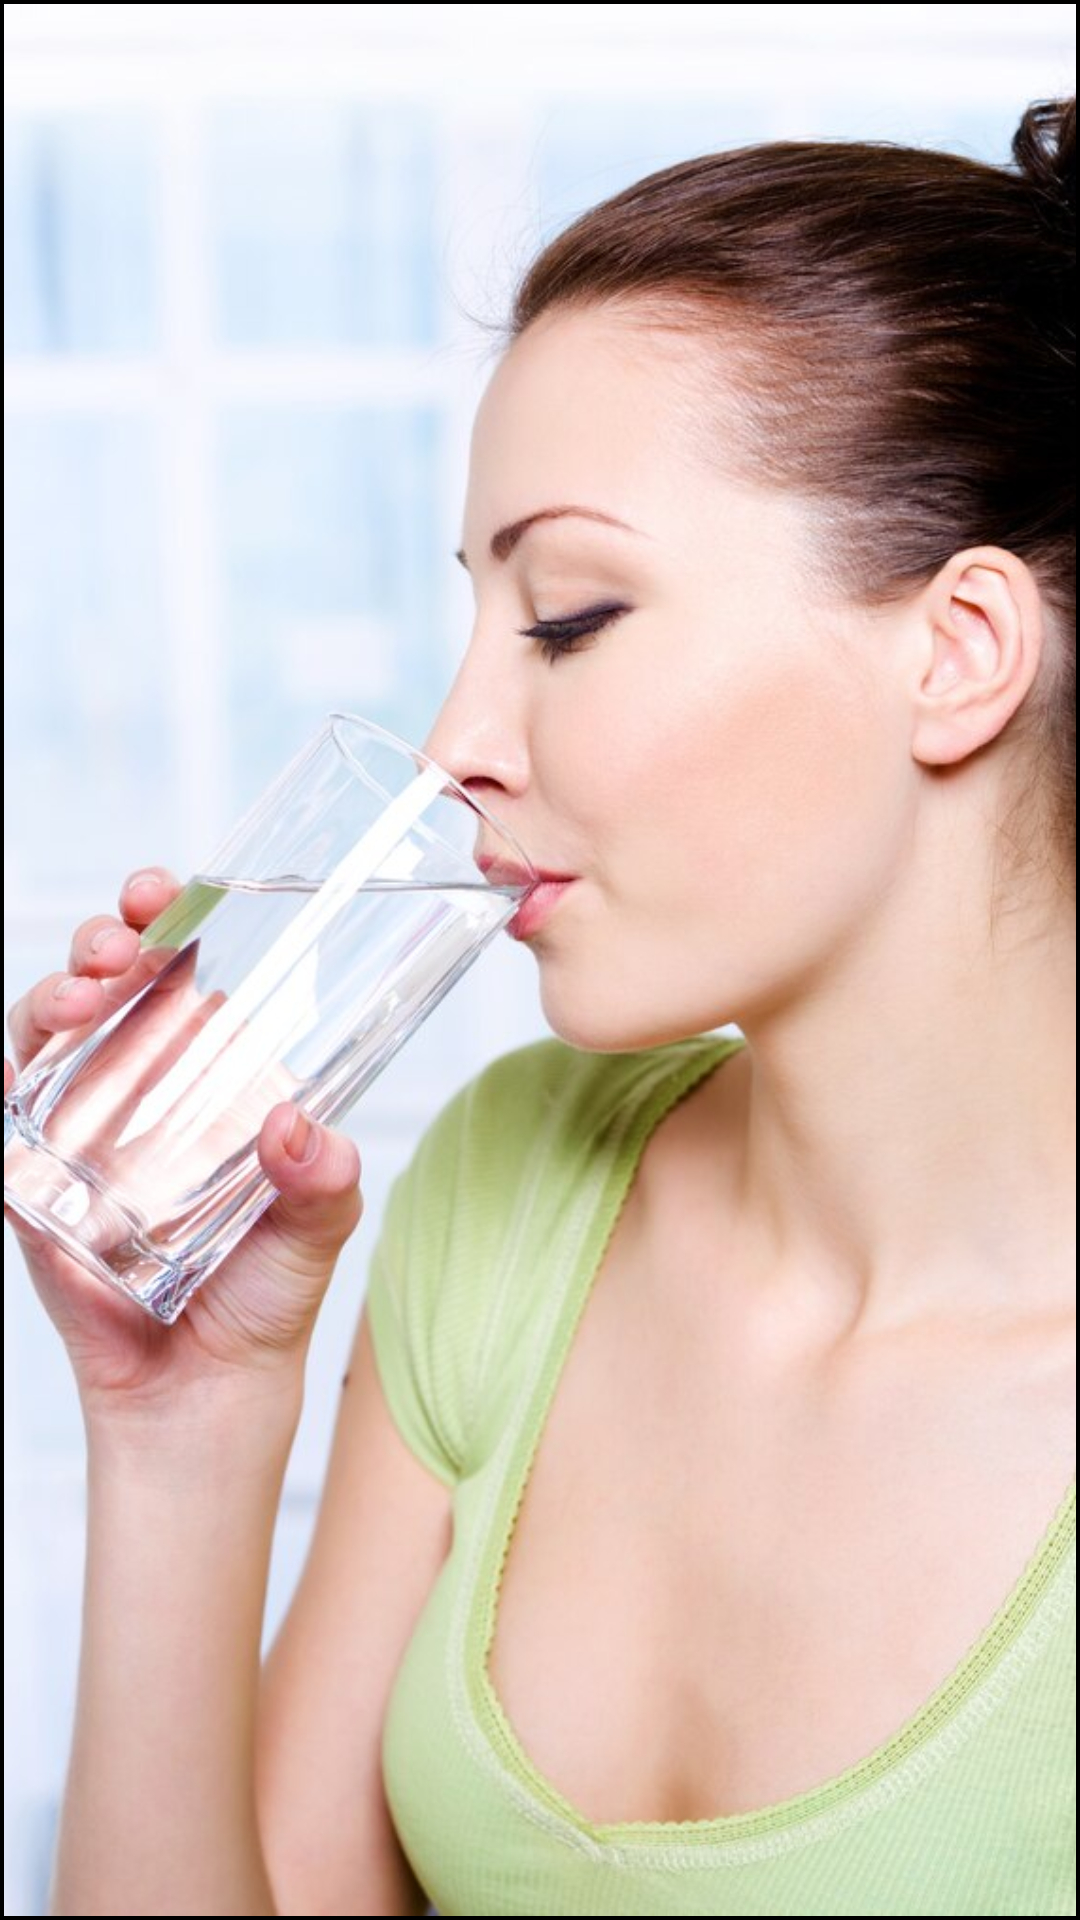 क्या खाना खाने के फौरन बाद पानी पीना चाहिए?